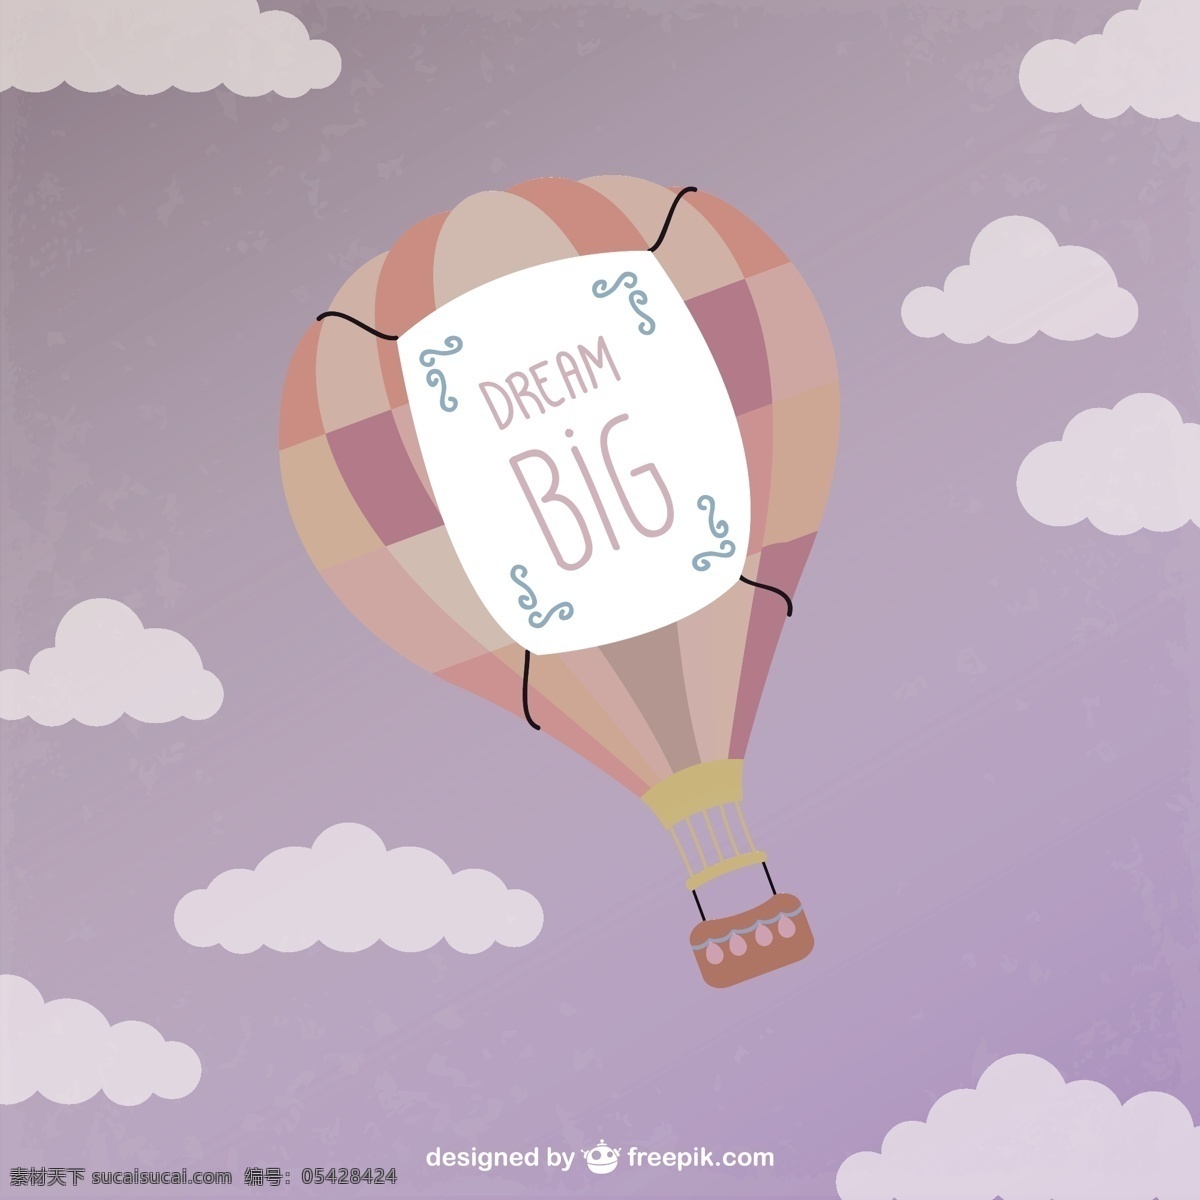 热气球飞行 天空 气球 云 梦 睡眠 热气球 插图 消息 飞 画 空气 做梦 思想 白色